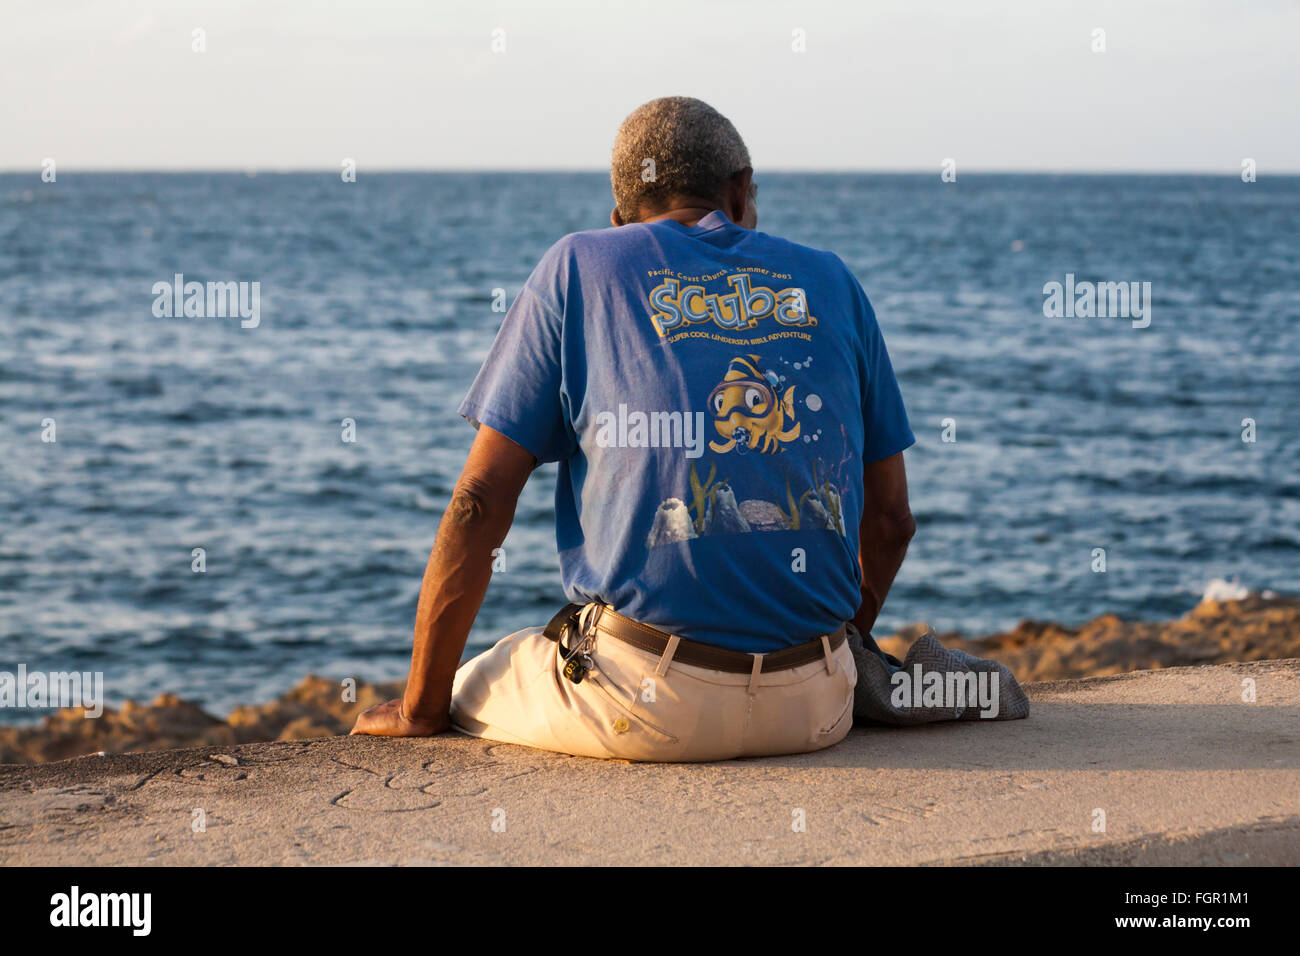 Image result for malecon de habana hombre mirando al mar